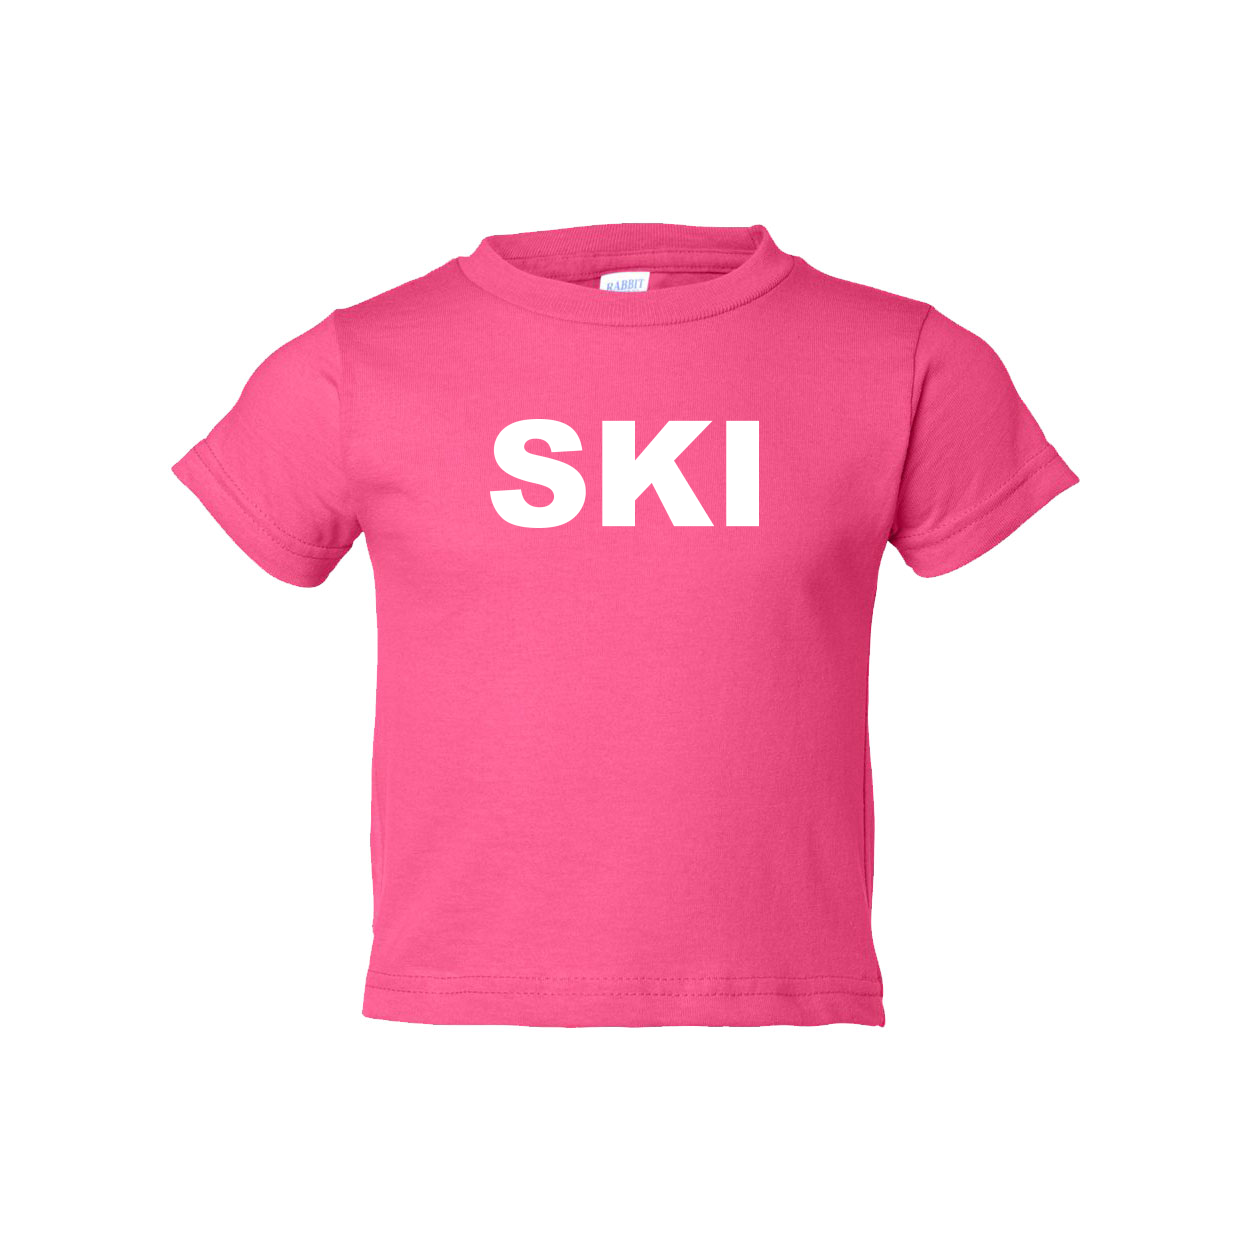 Ski Brand Logo Classic Toddler T-Shirt Pink